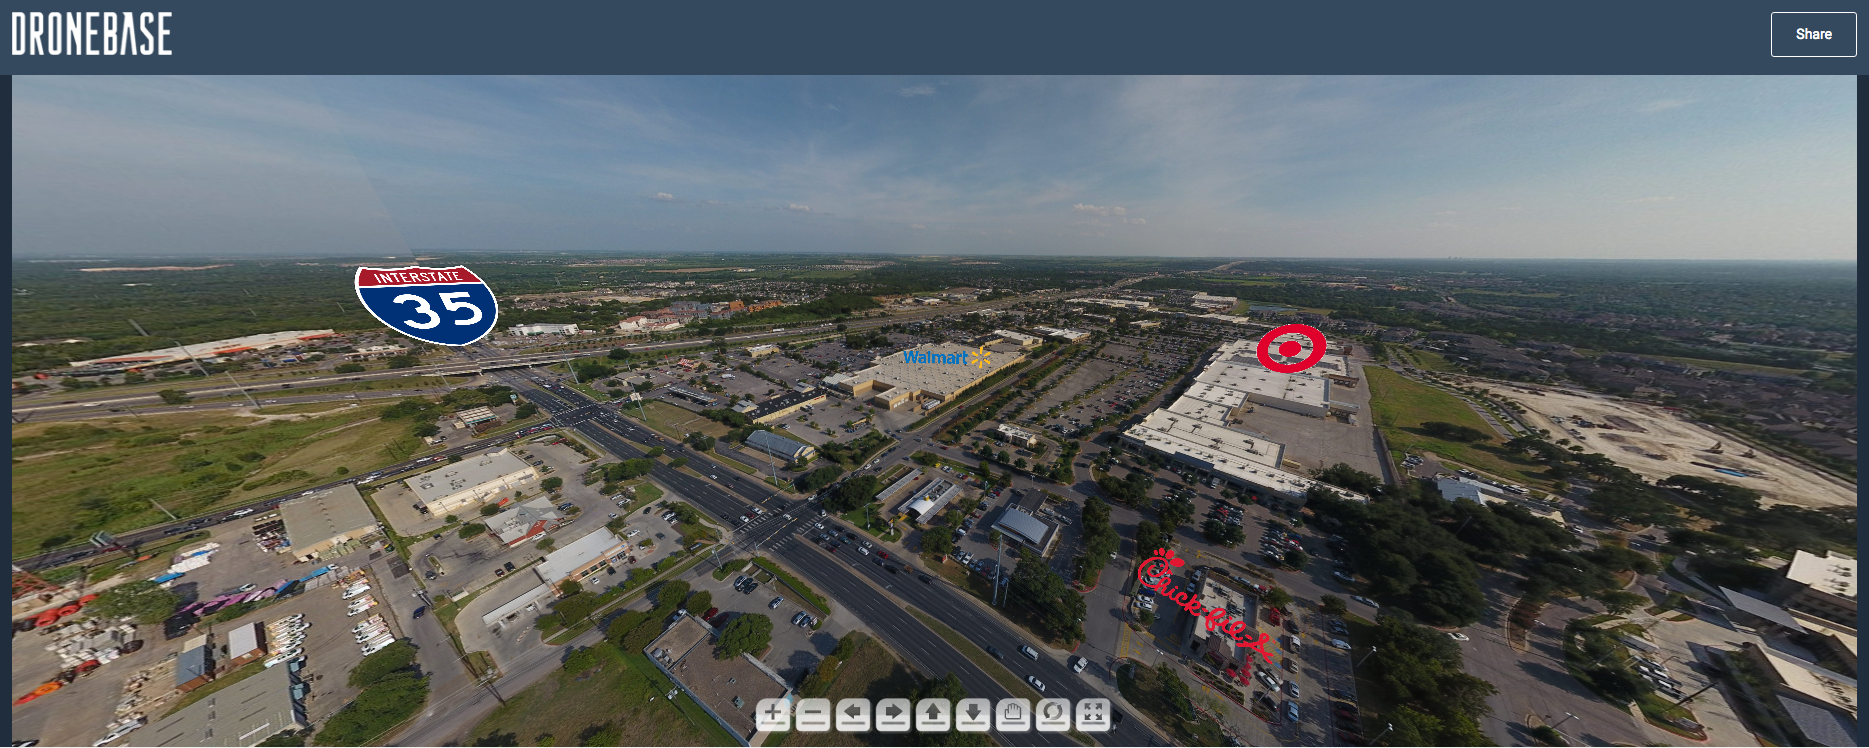 DroneBase 360 degree Panorama